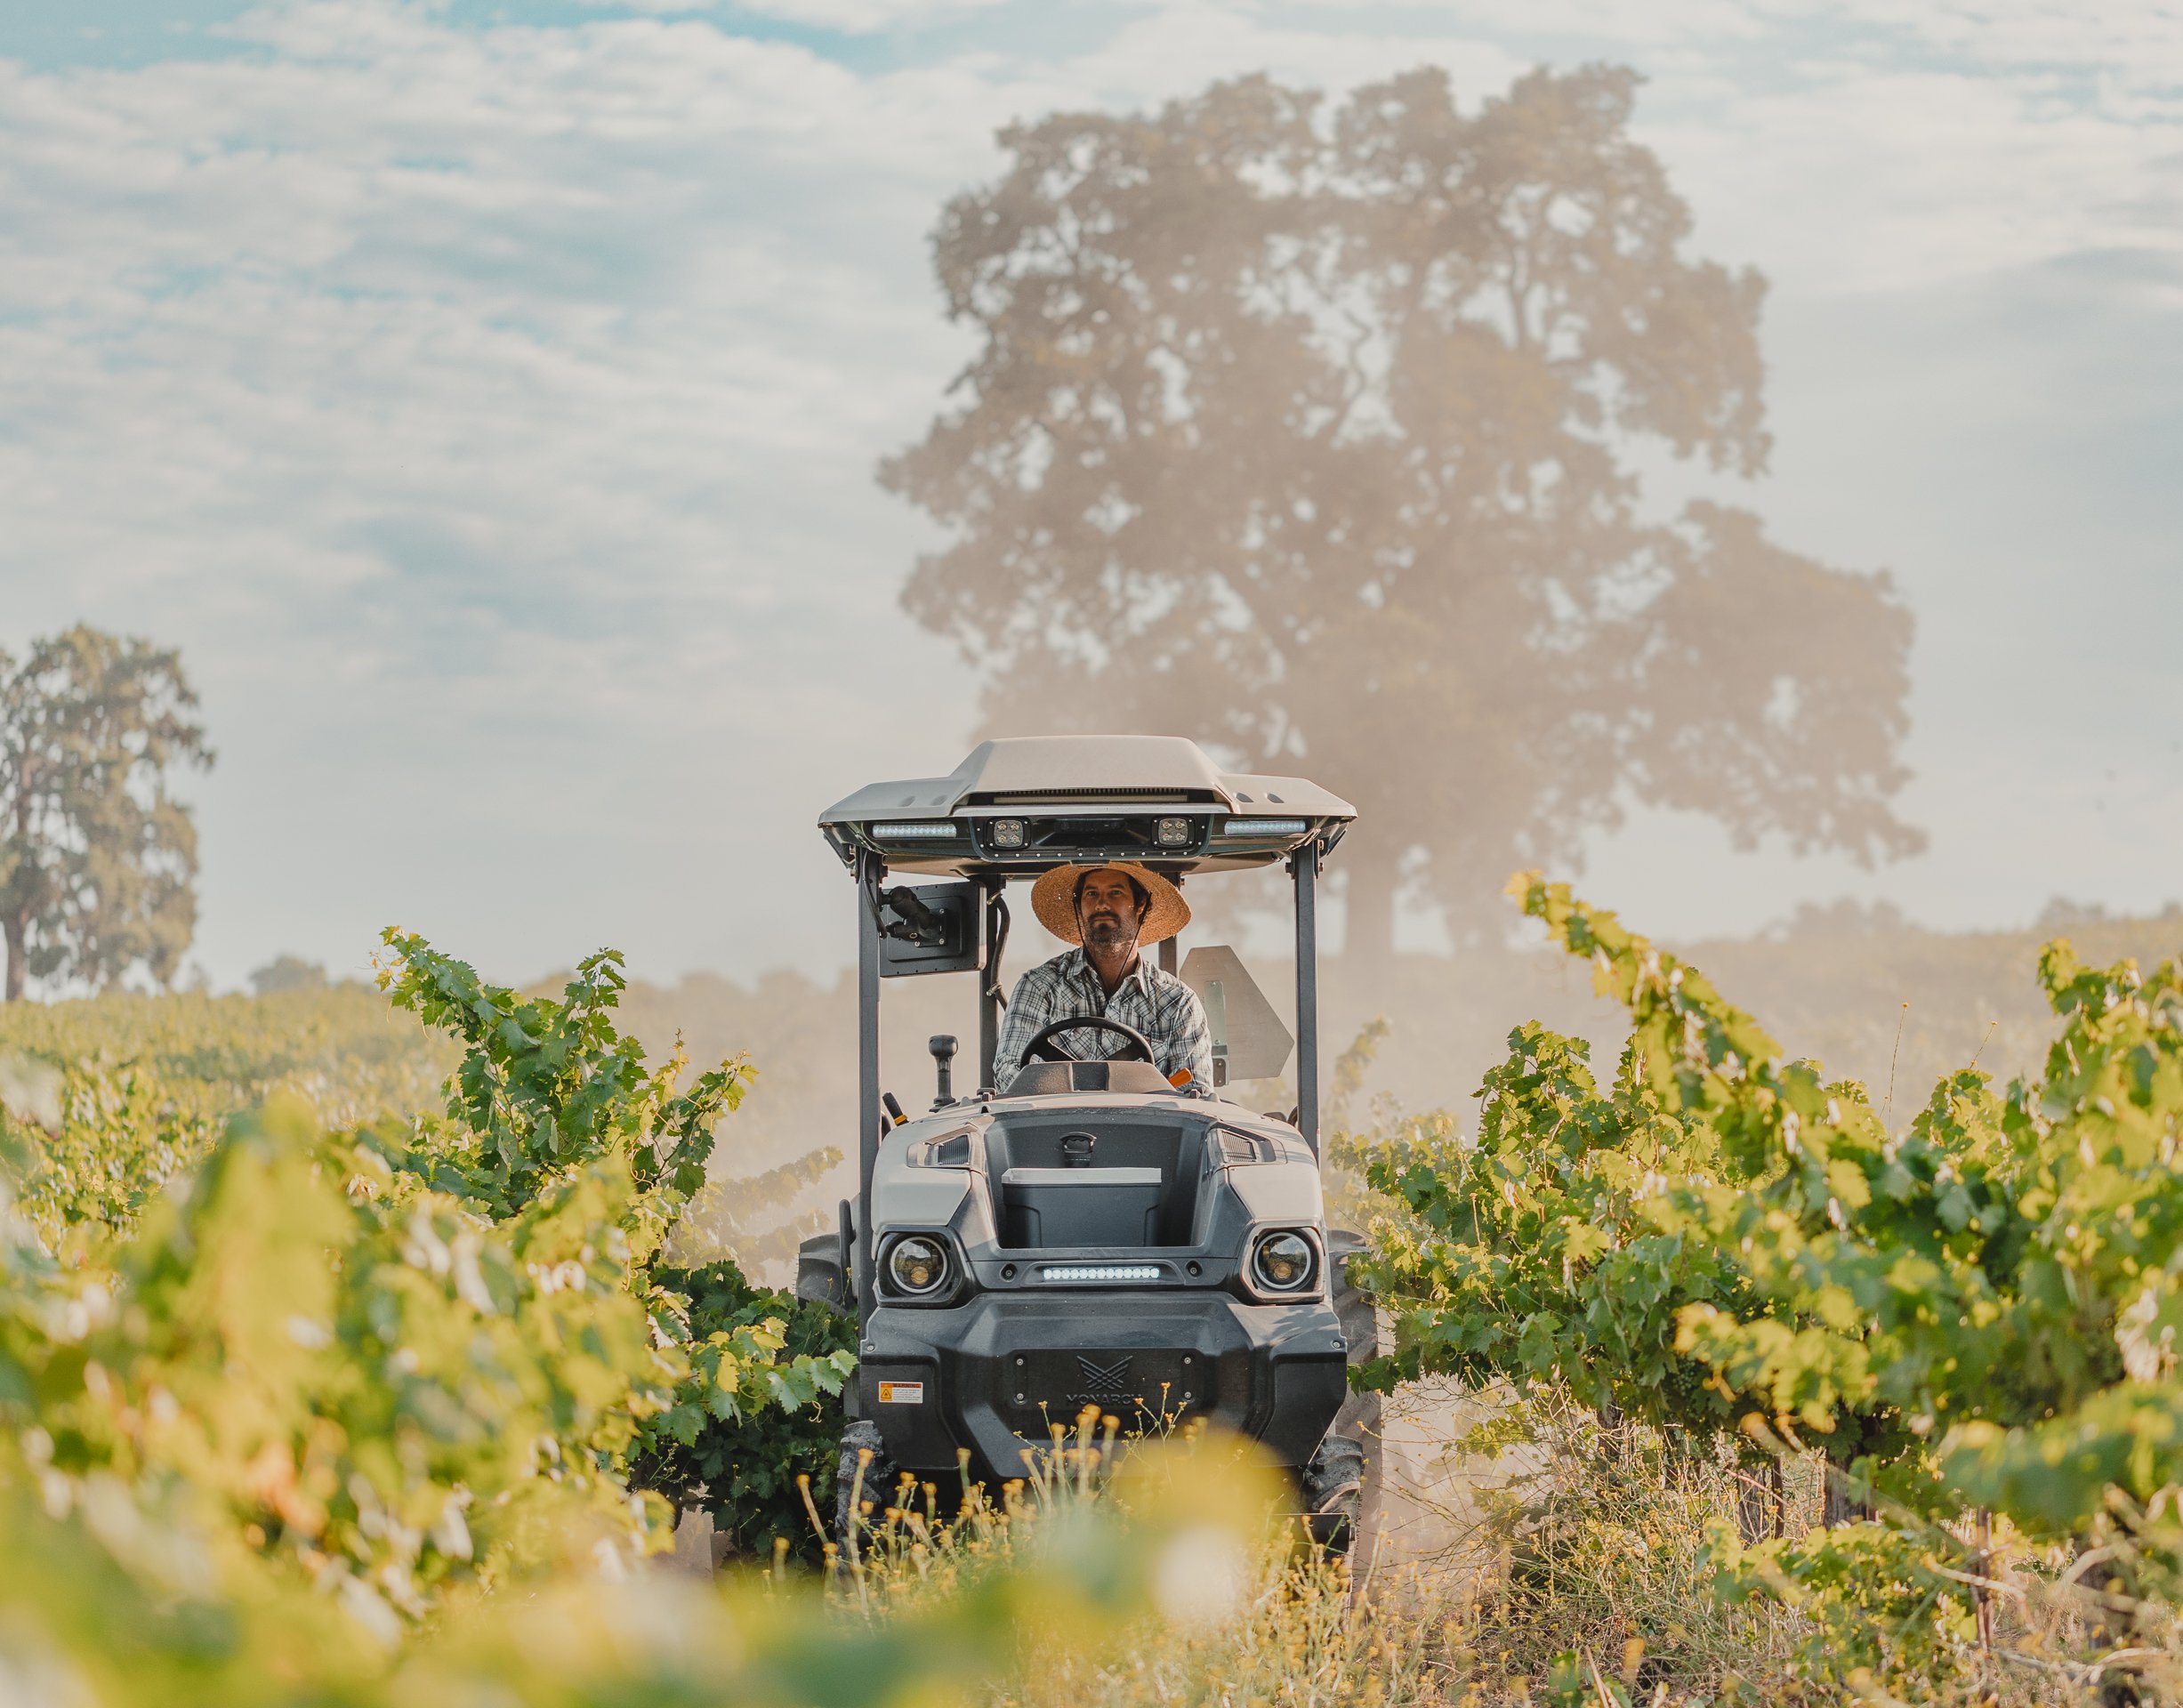 MK-V driving in vineyard